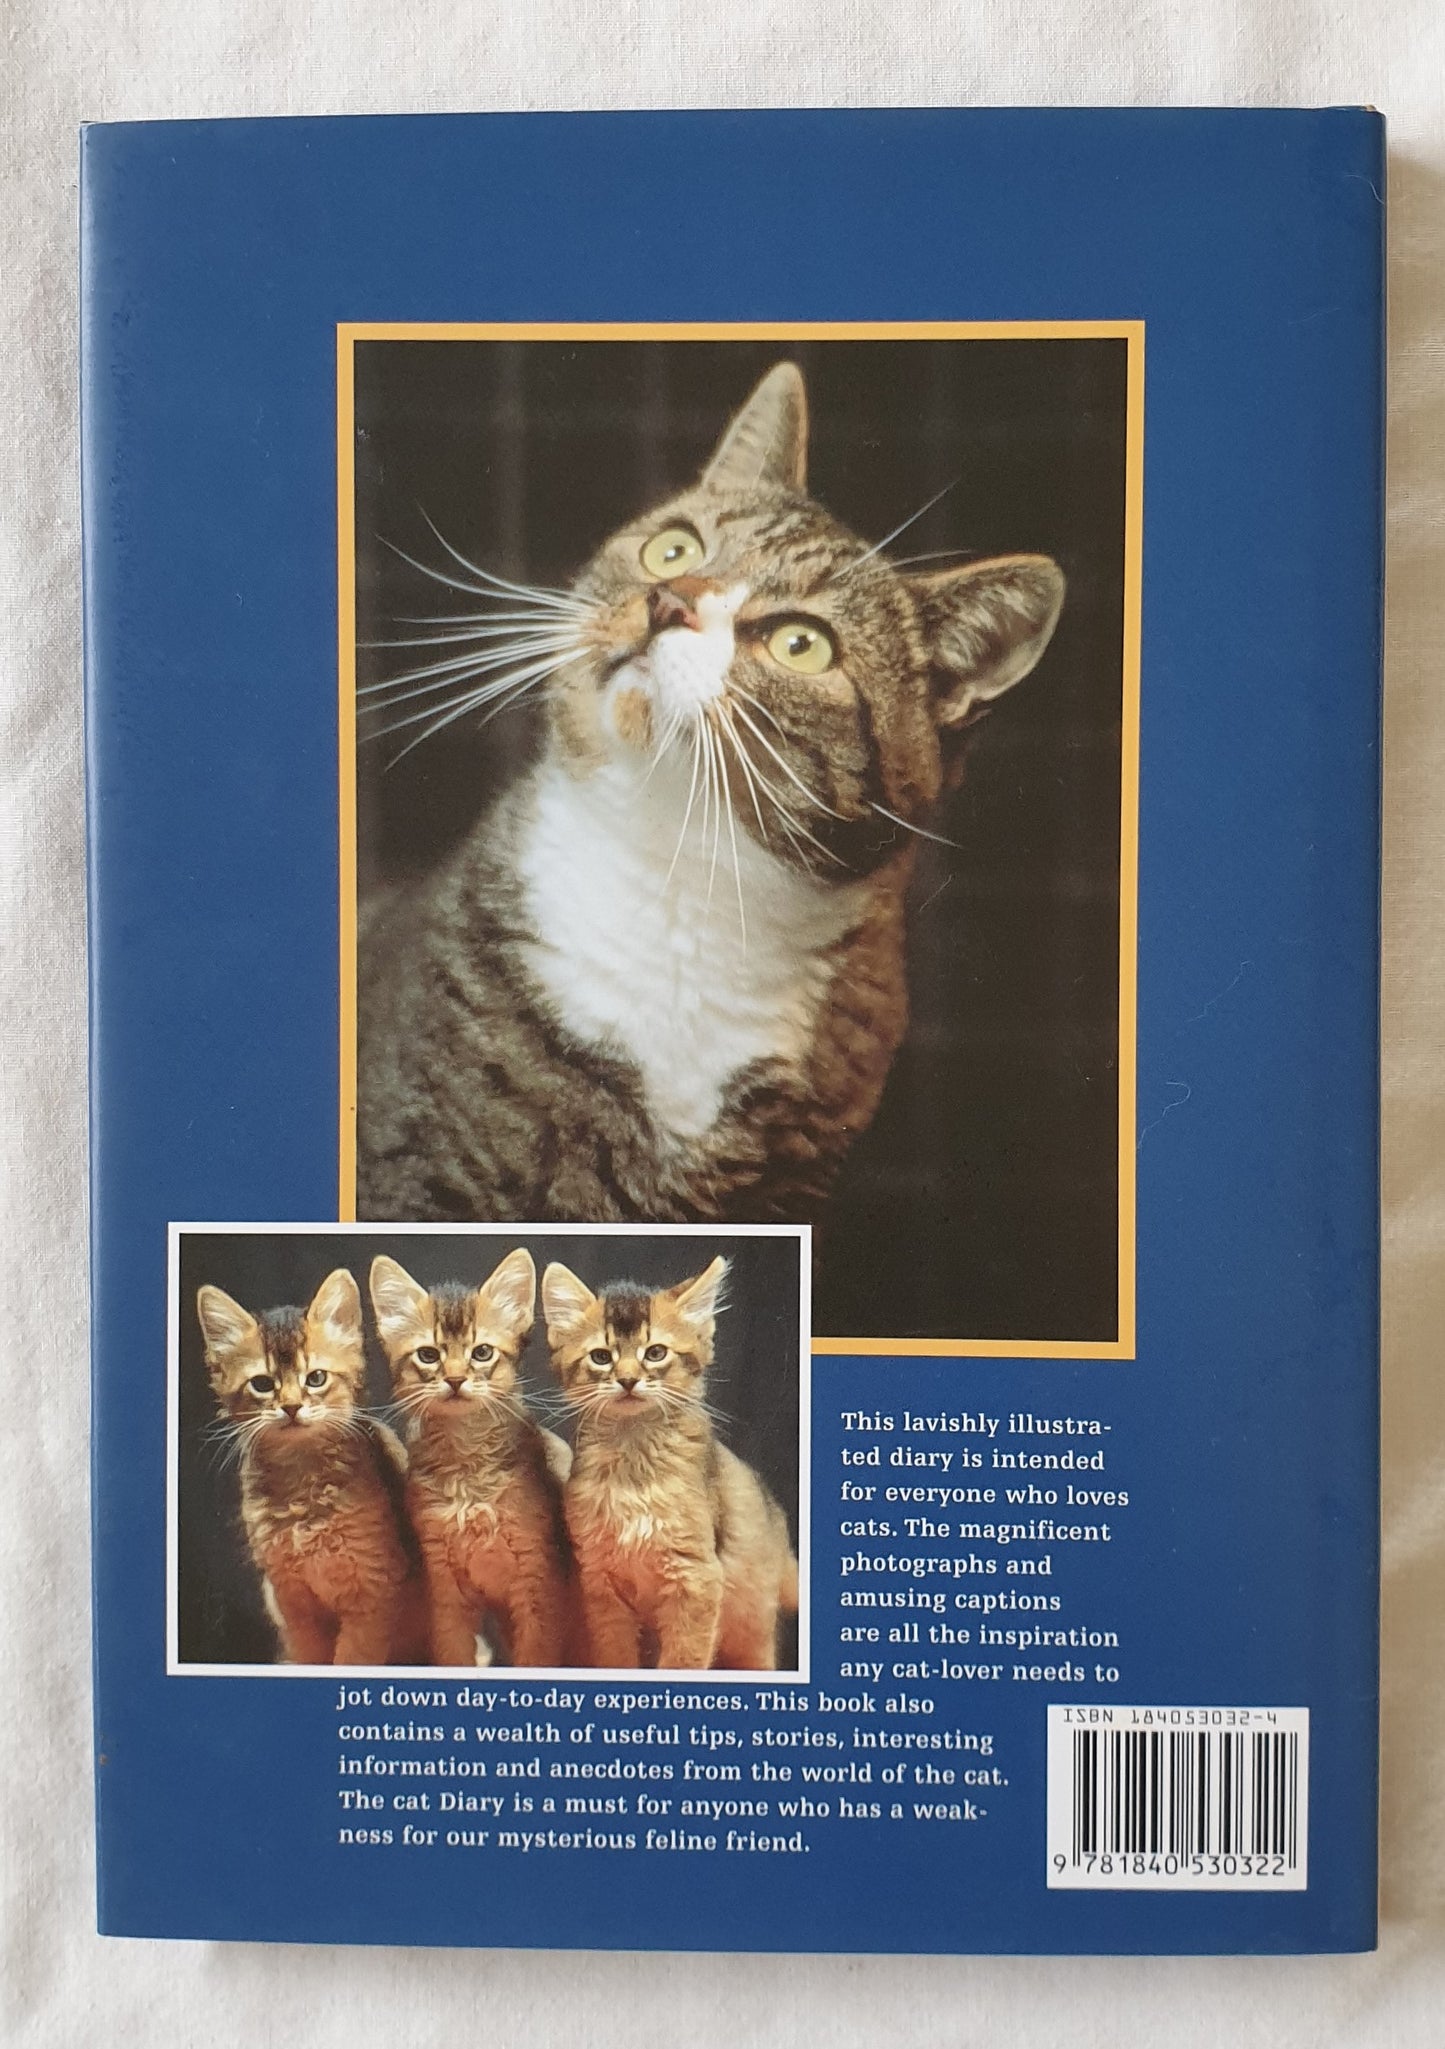 The Cat Diary by Esther J. J. Verhoef-Verhallen